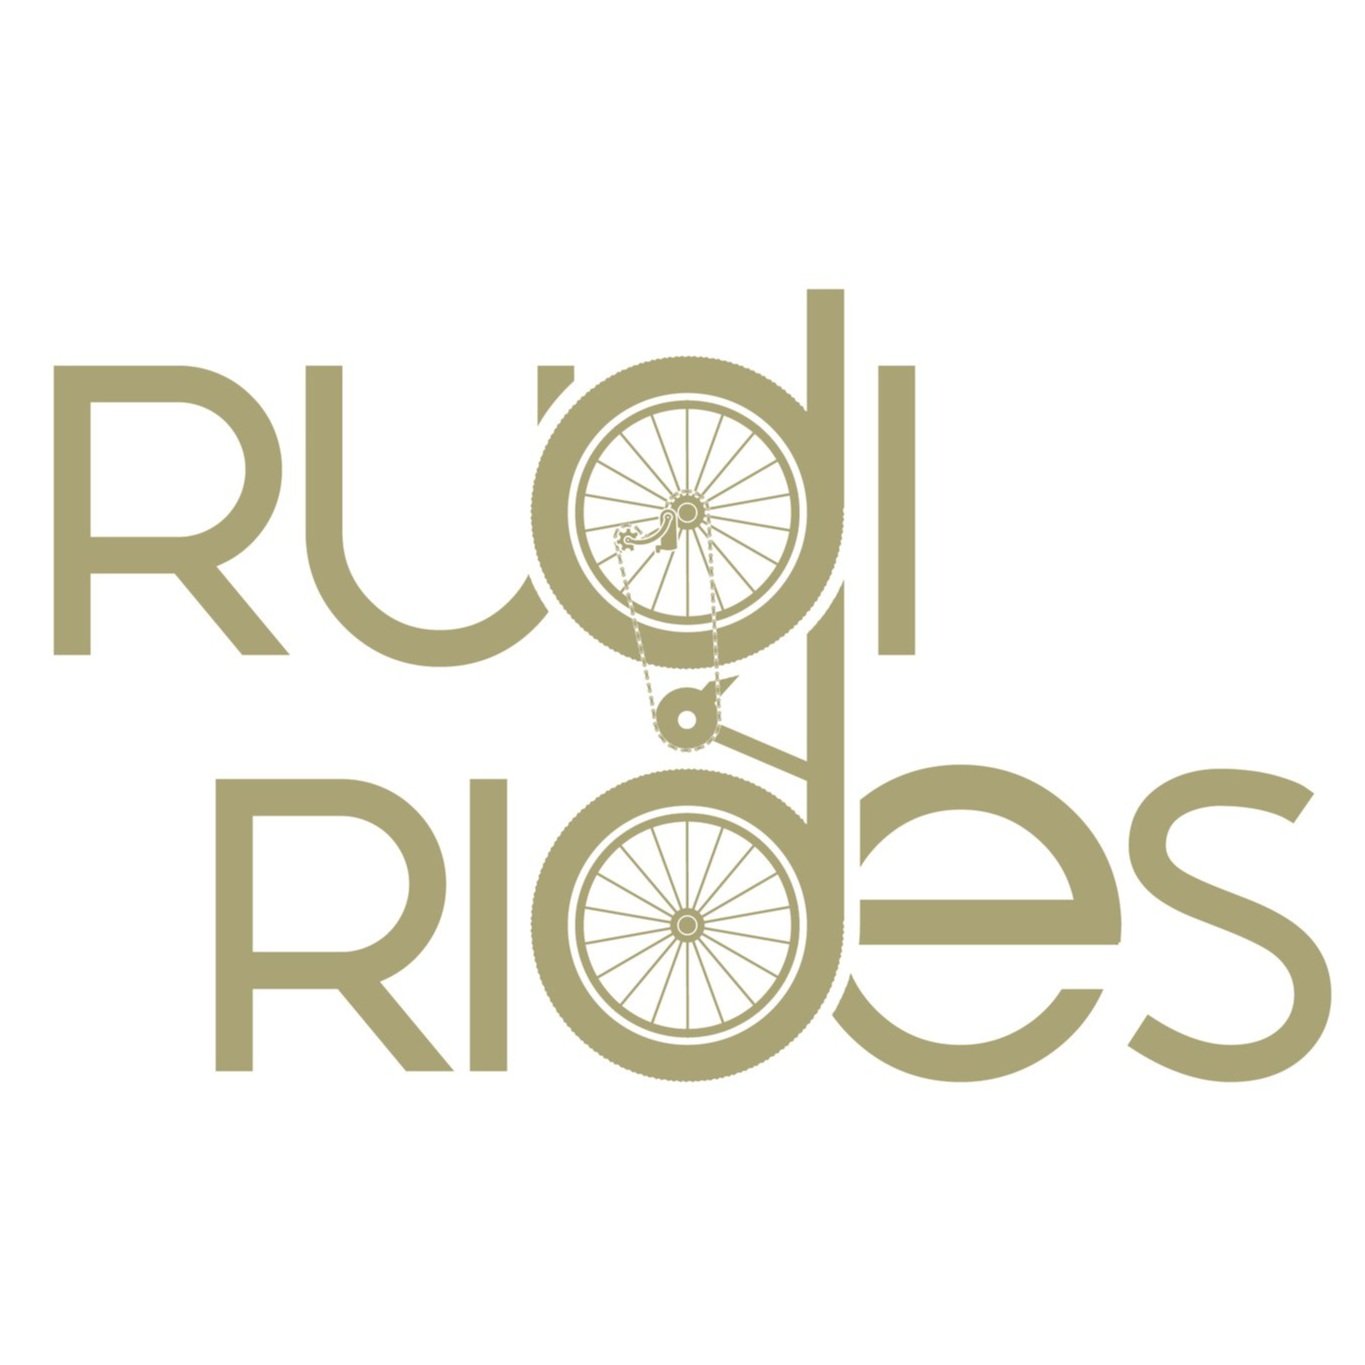 Rudi Rides